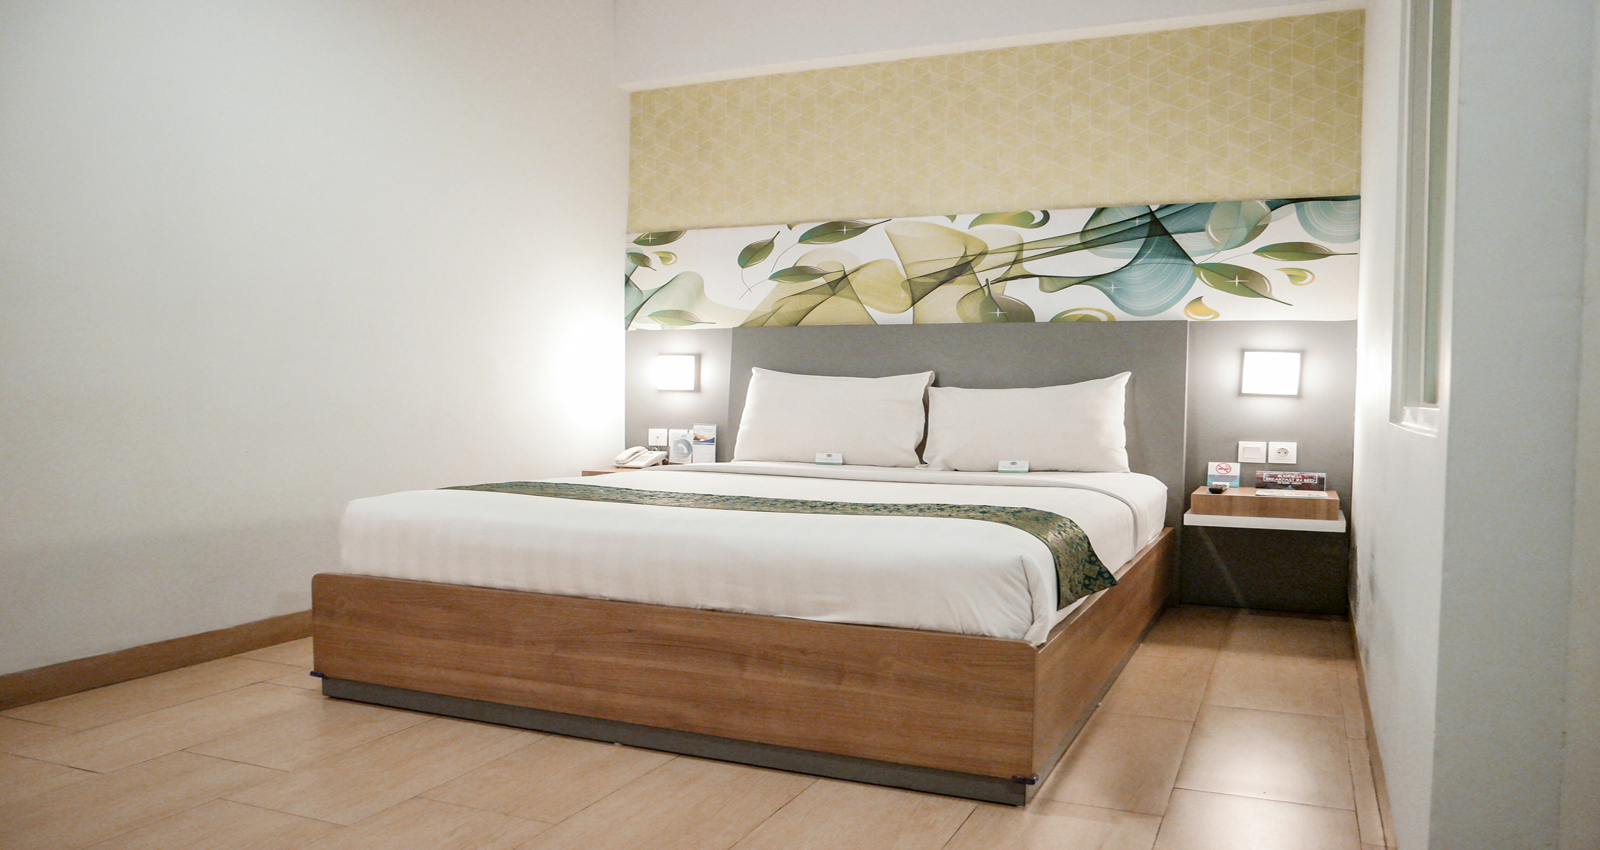 Bedroom 5, Evo Hotel Pekanbaru, Pekanbaru